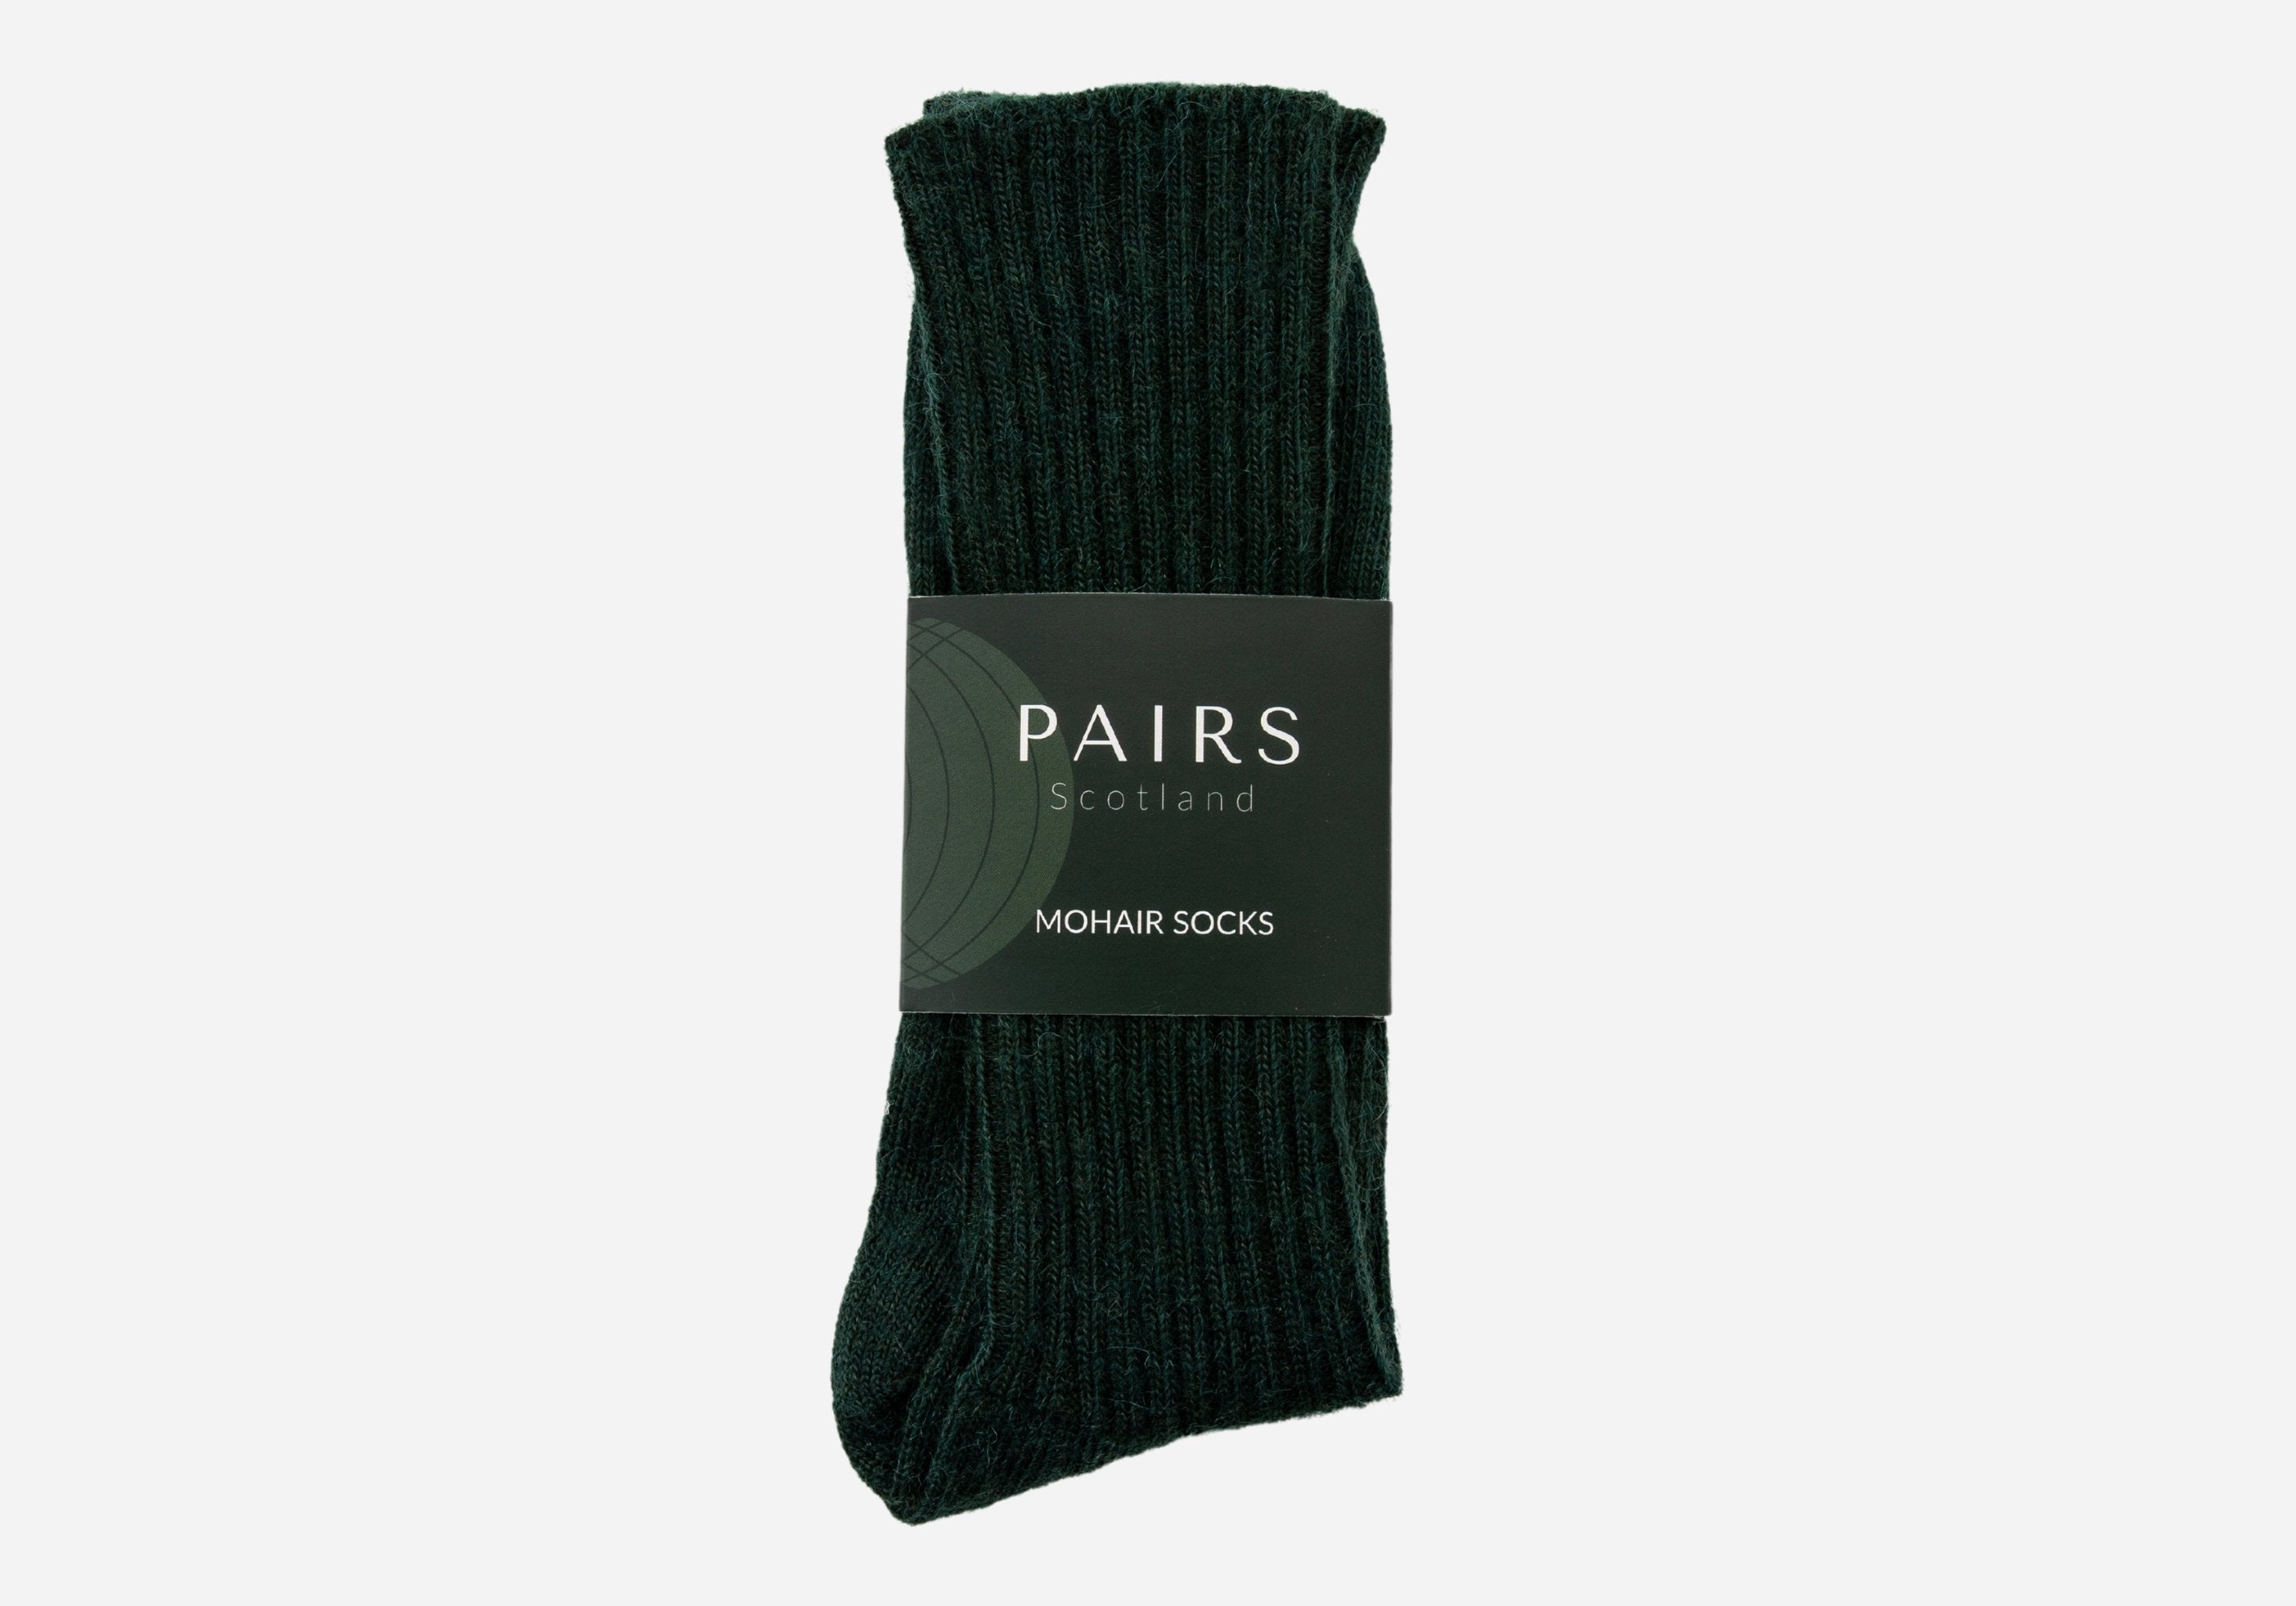 green mohair socks in brand packaging